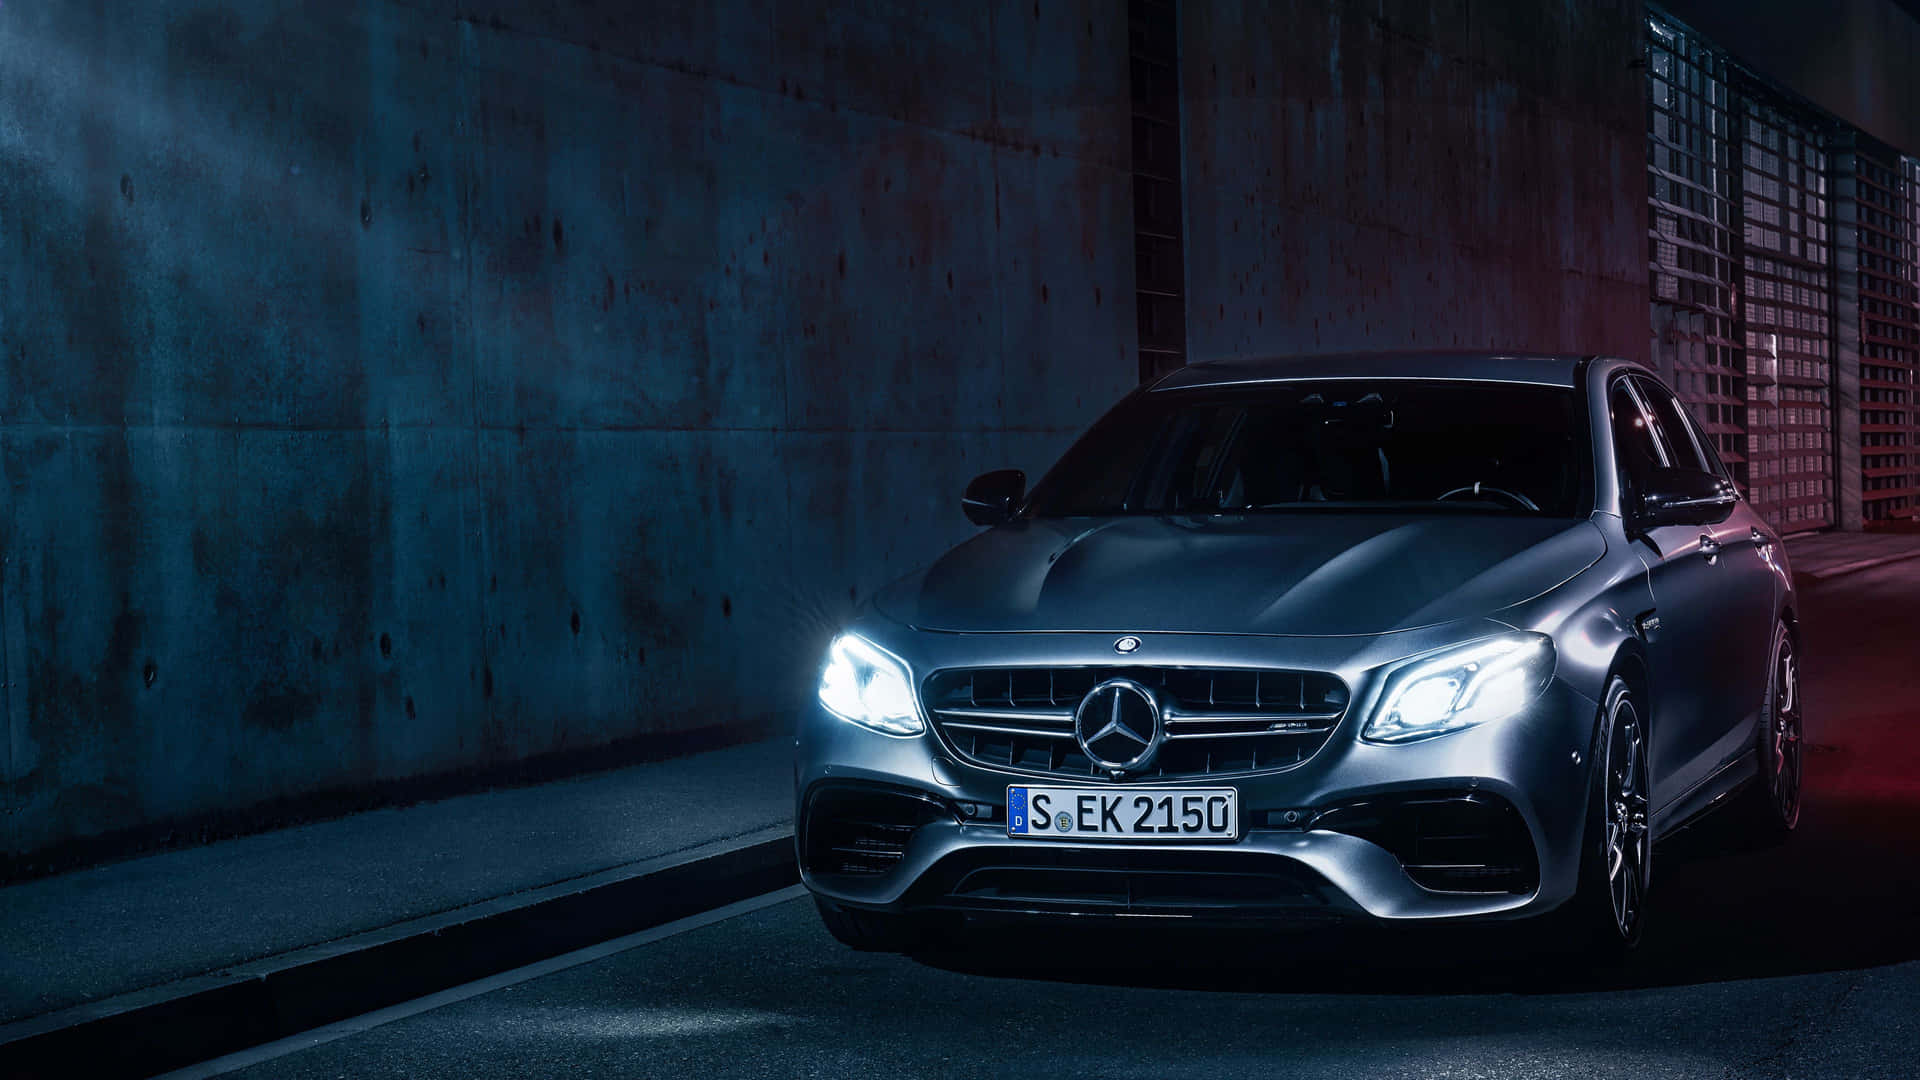 Stunning 4K Mercedes-Benz Wallpaper